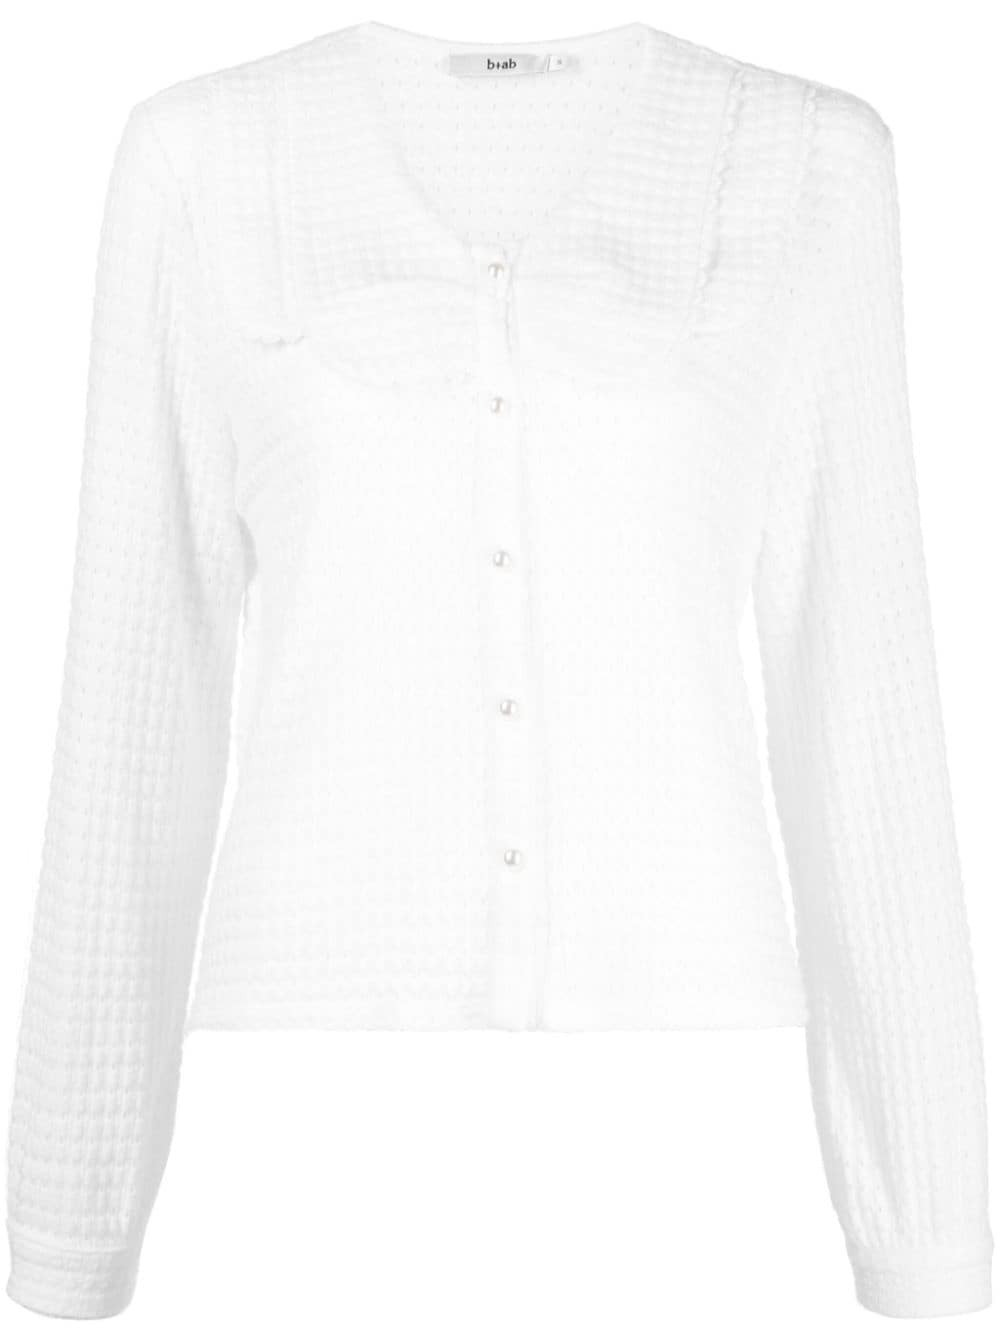 b+ab open-knit button-down cardigan - White von b+ab